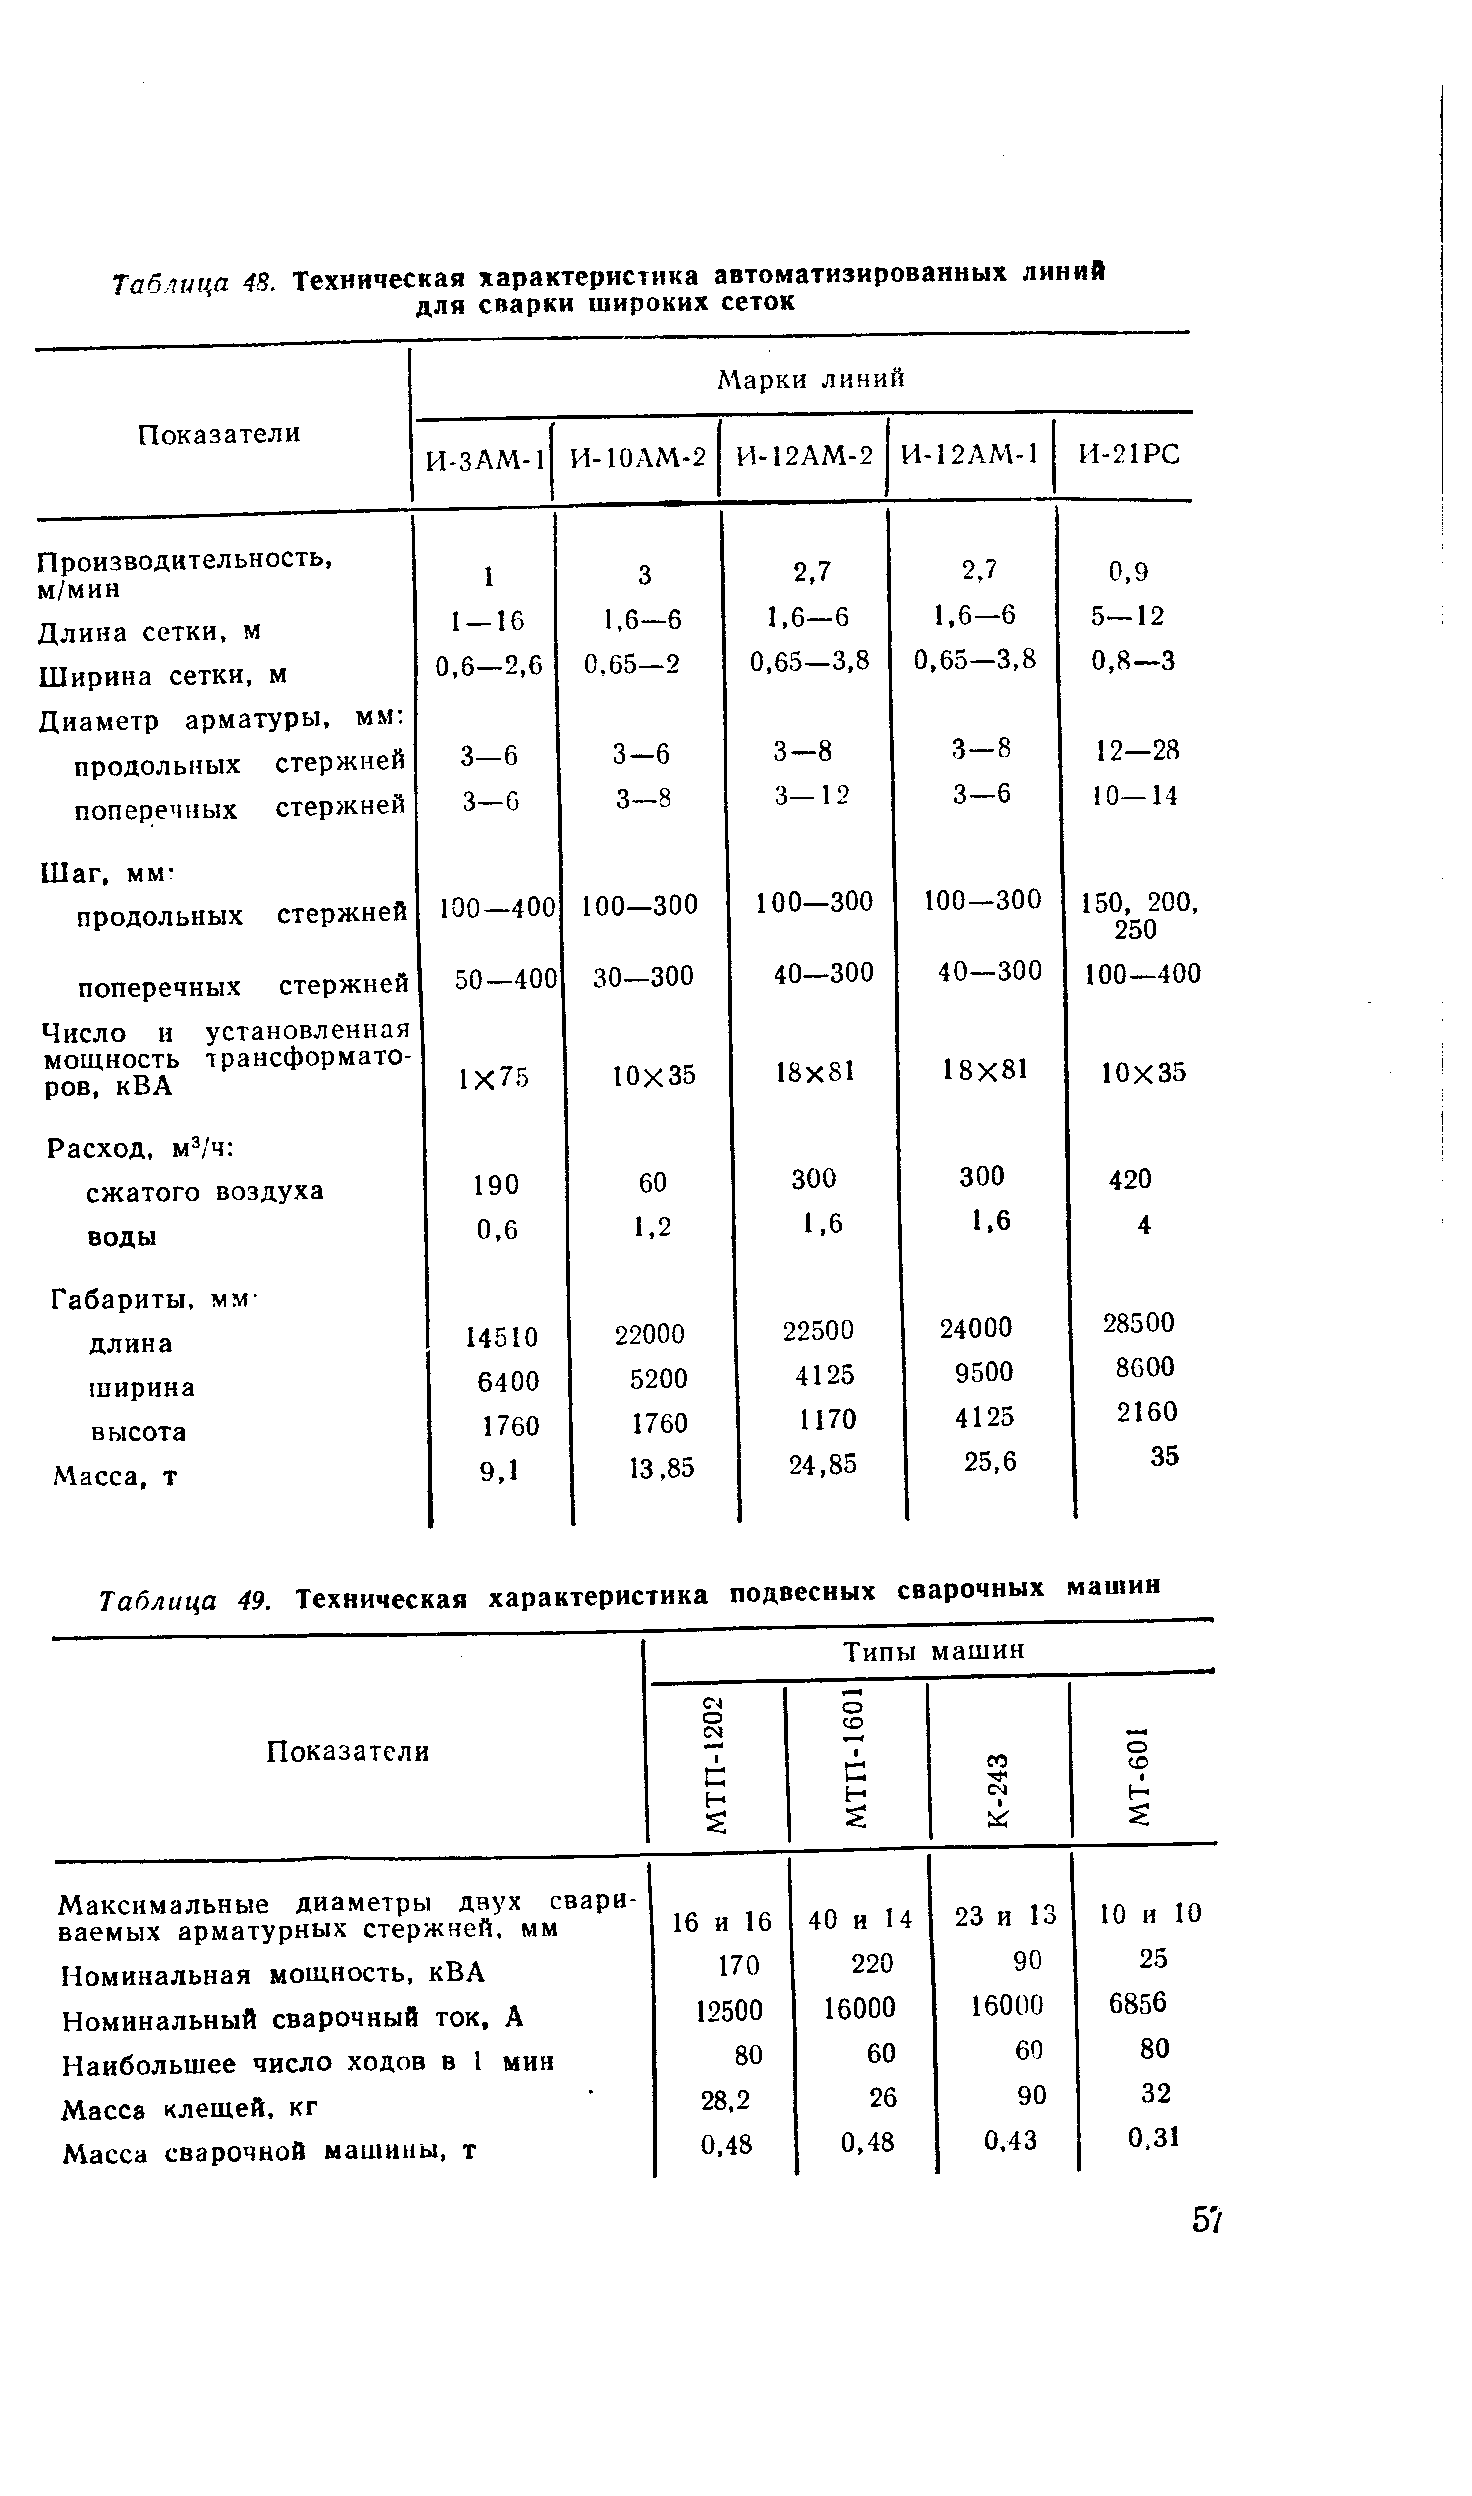 Таблица 49. Техническая характеристика подвесных сварочных машин
